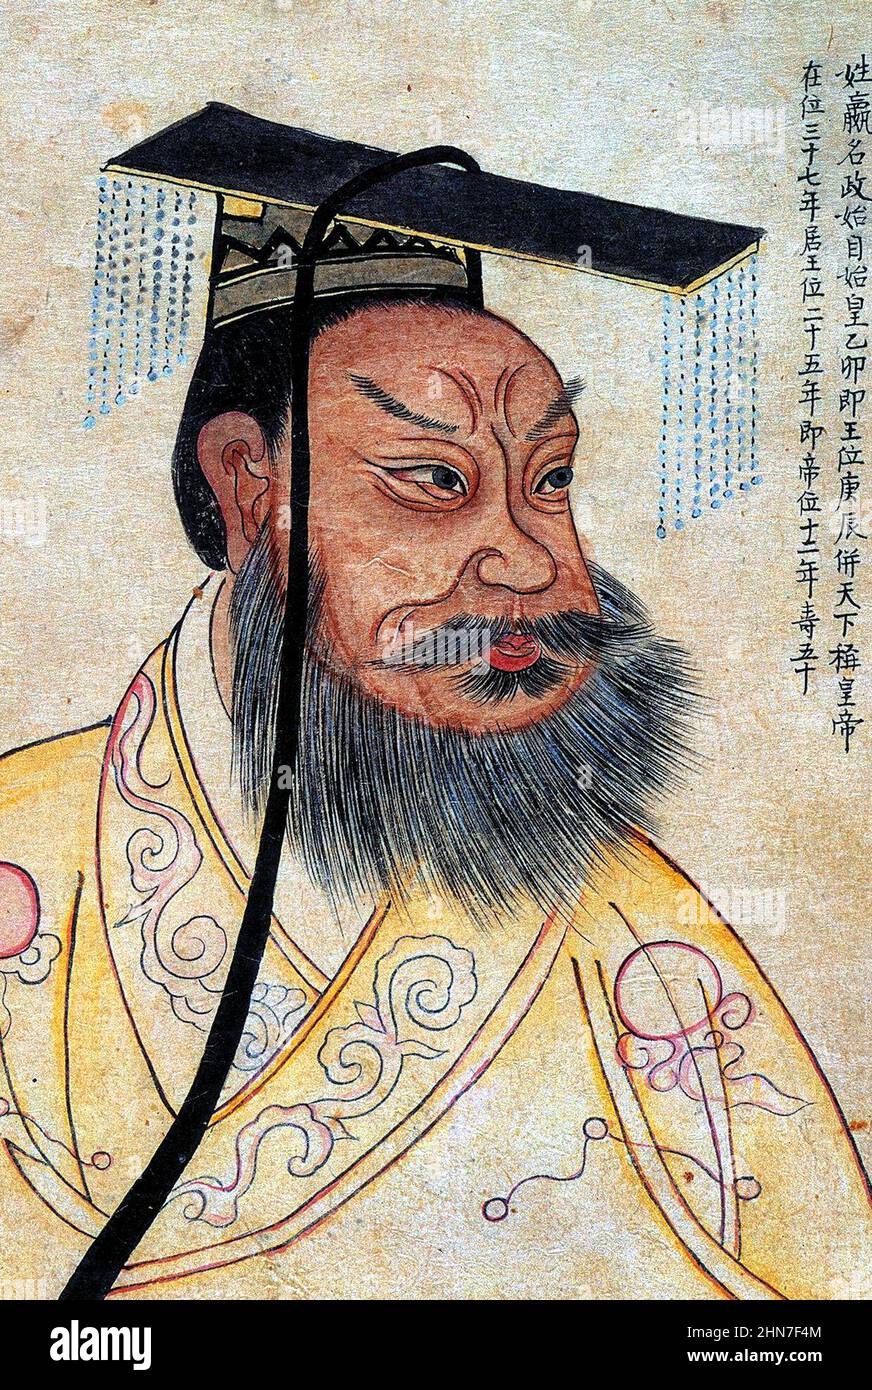 Qin Shi Huang in un ritratto del 19th secolo, con i colofoni coreani, in un album raffigurante famose figure storiche. È una copia di un ritratto cinese del 1609 Foto Stock